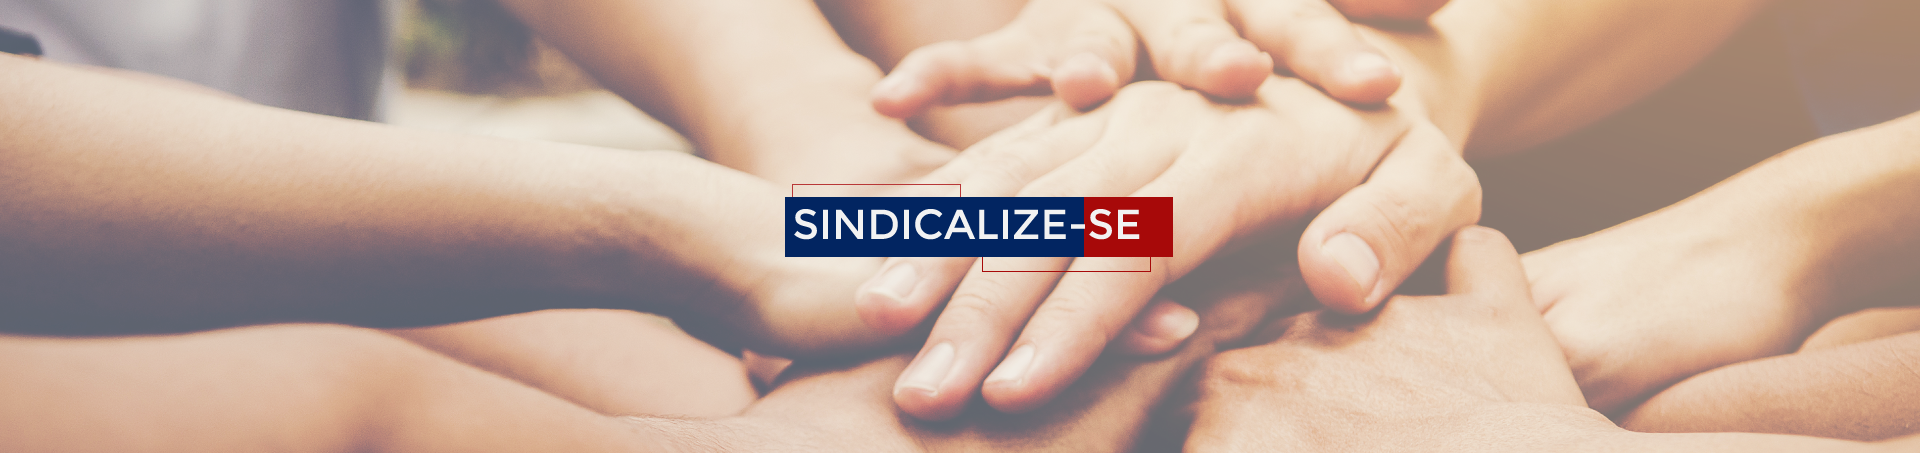 Banner Sindicalize-se